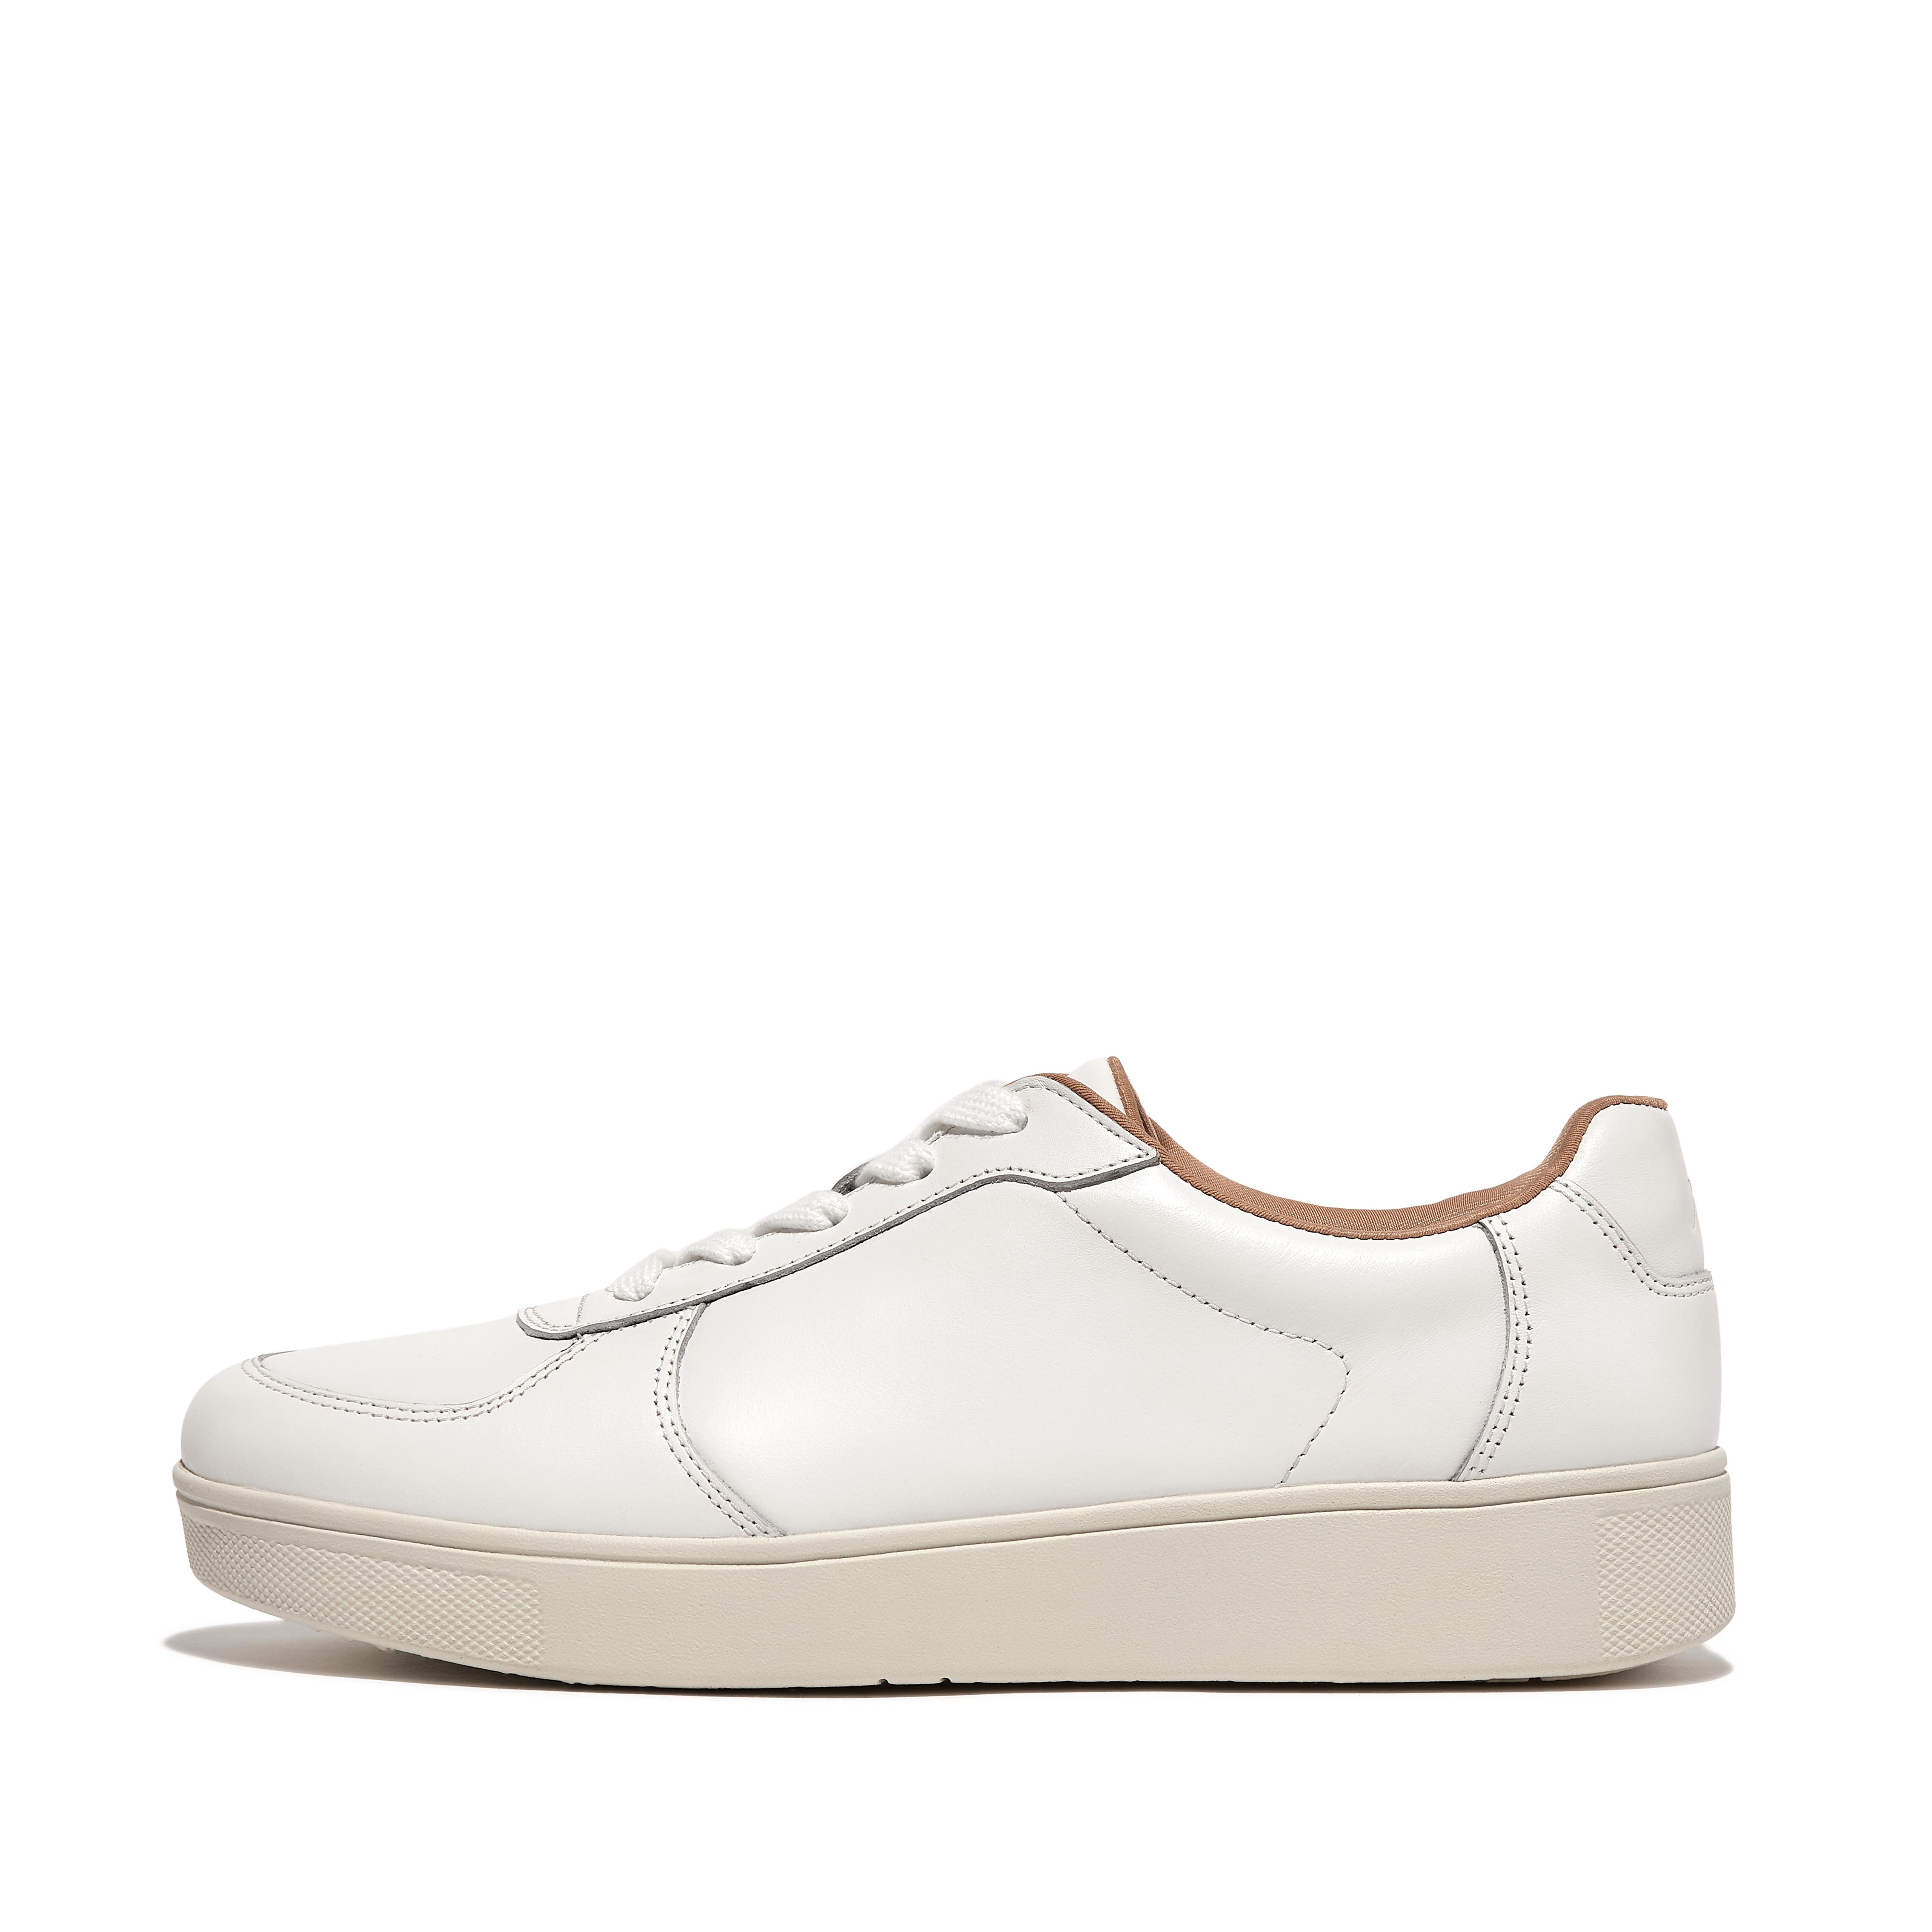 핏플랍 스니커즈 Fitflop Leather Panel Sneakers,Urban White